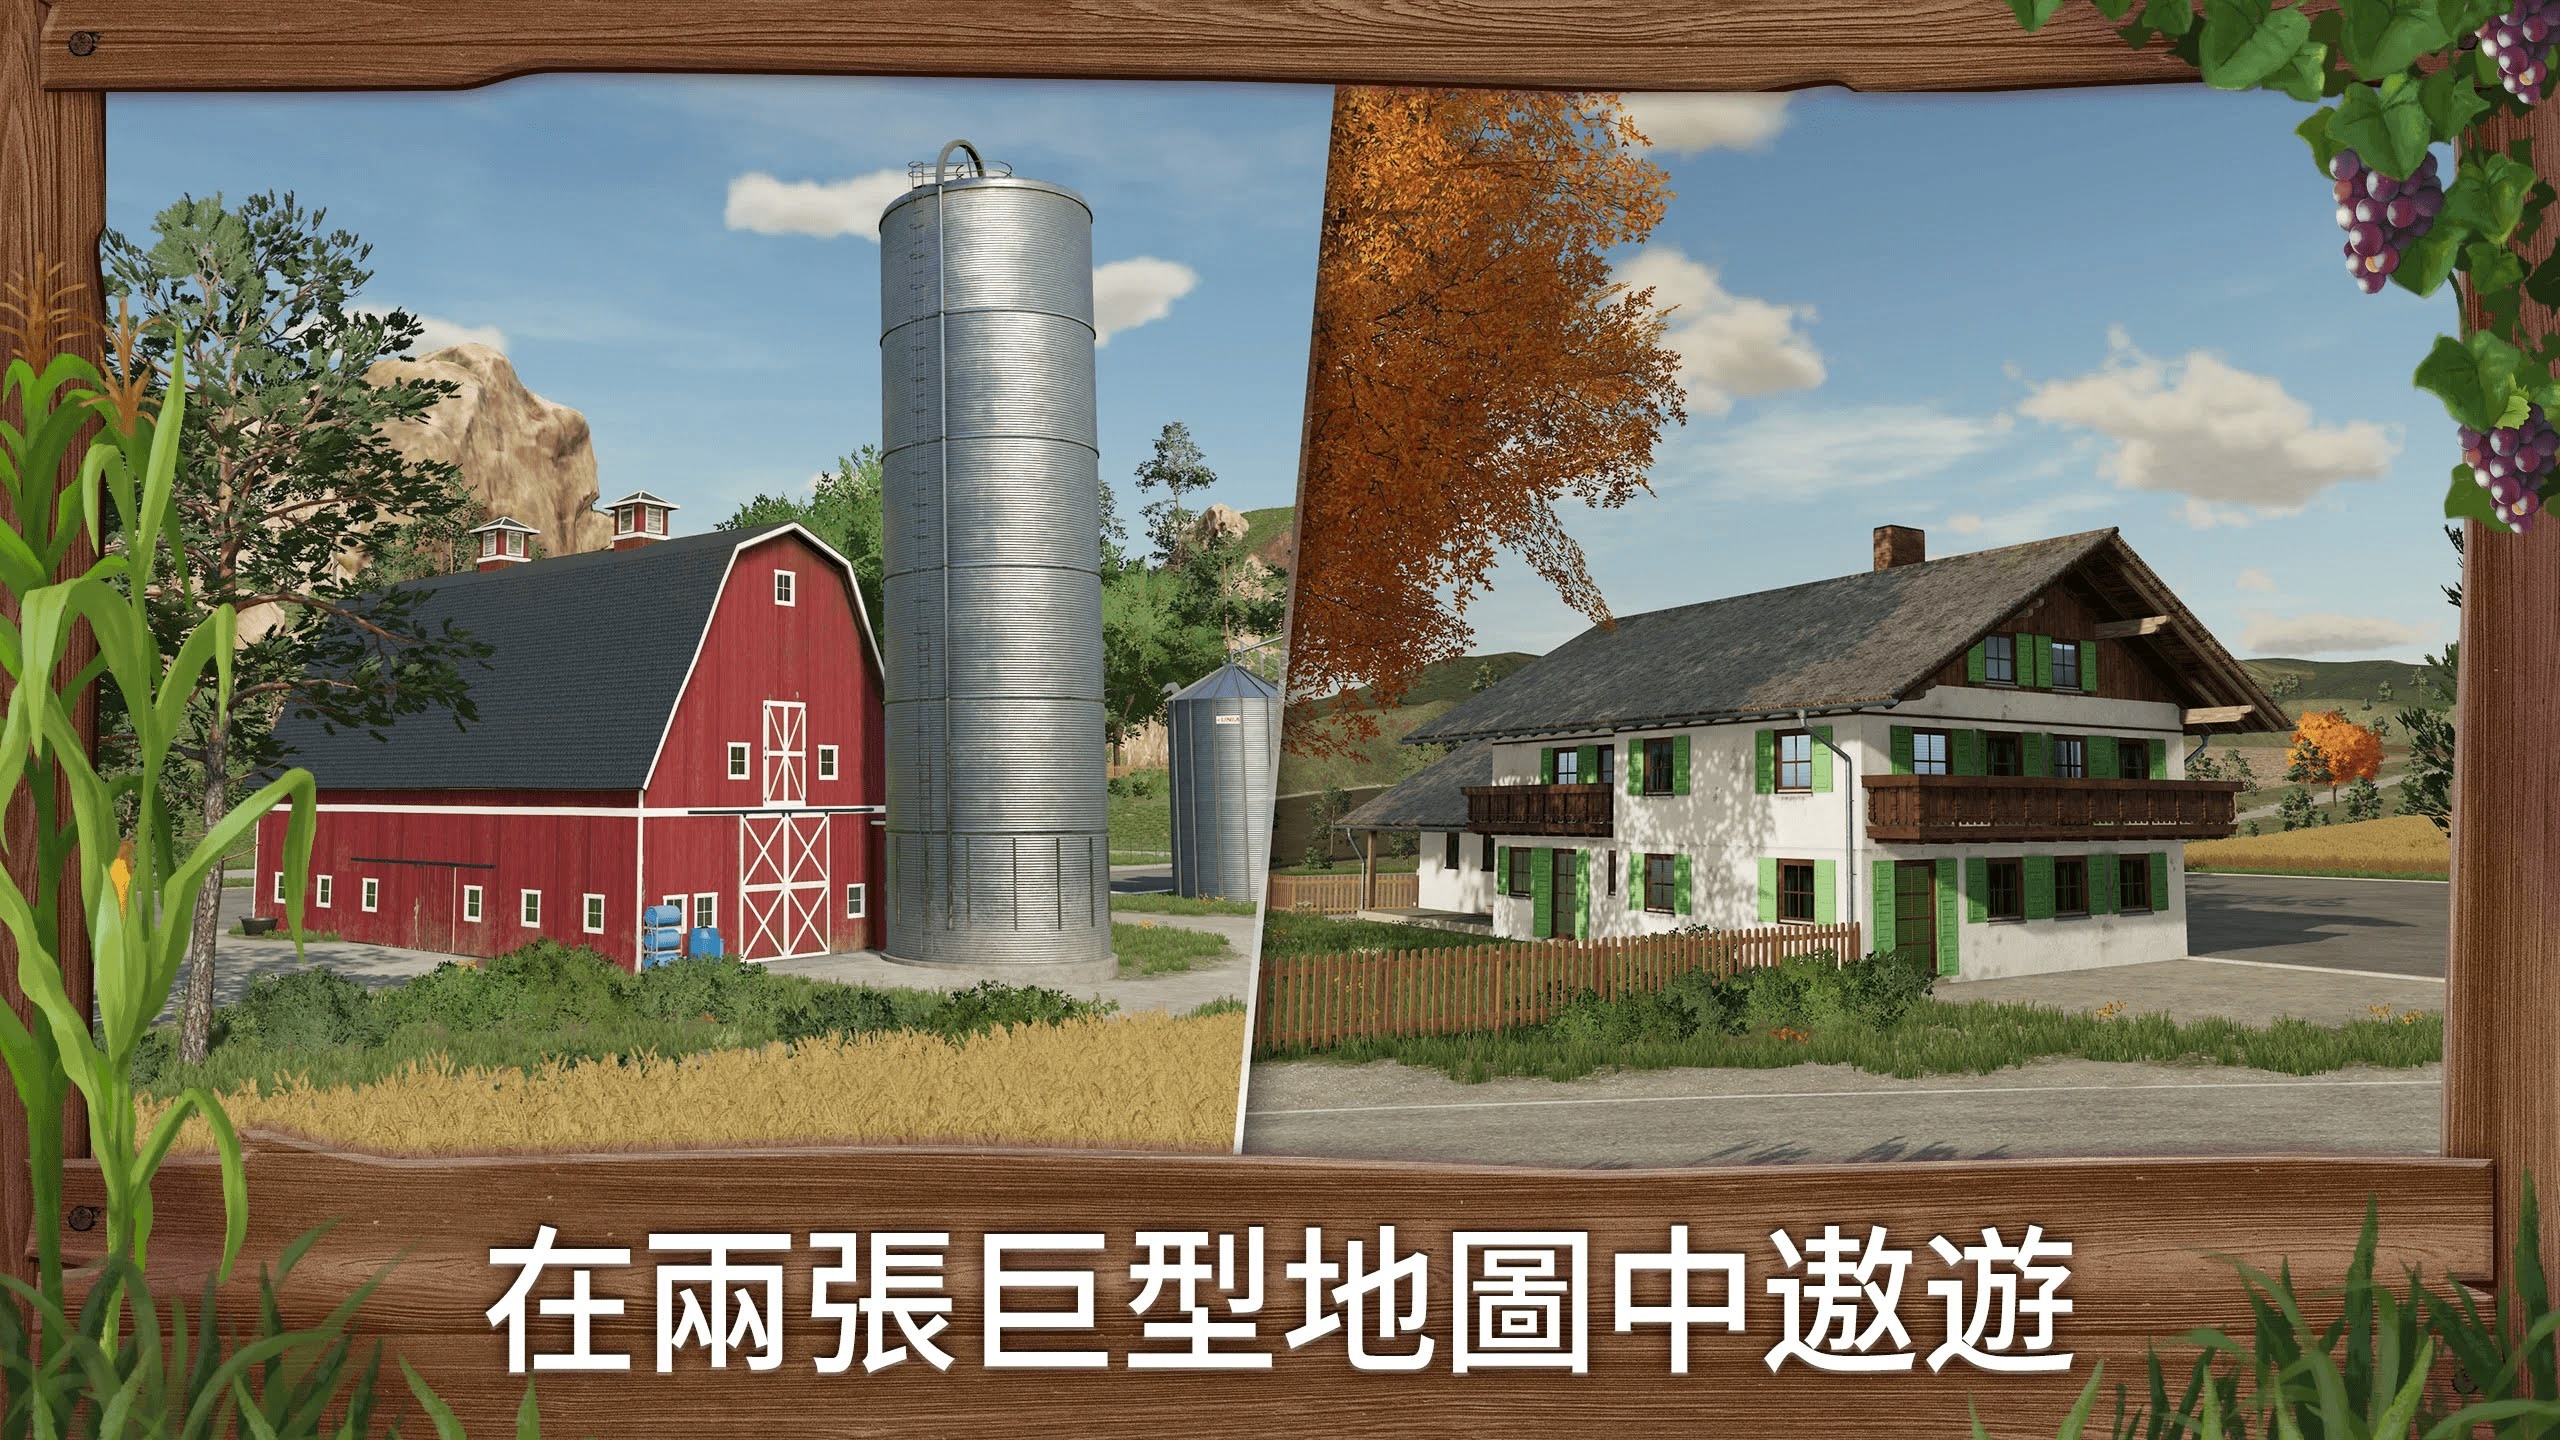 壯大自己的農業王國《模擬農場23》公開首支實機預告